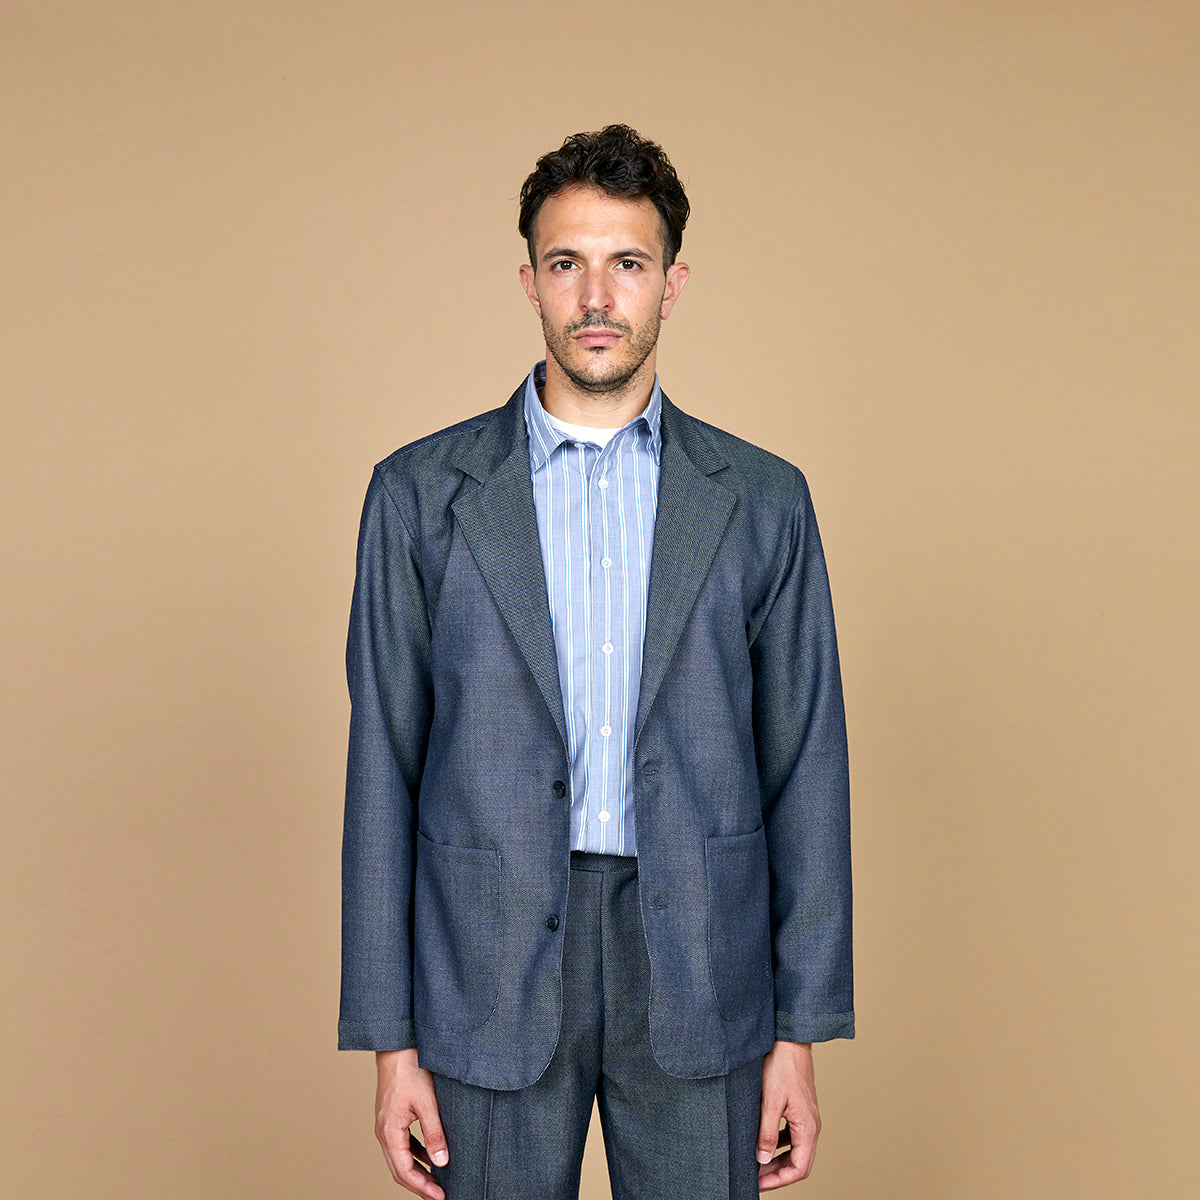 COLONY CLOTHING / デニムライクウール シャツジャケット / CC2301